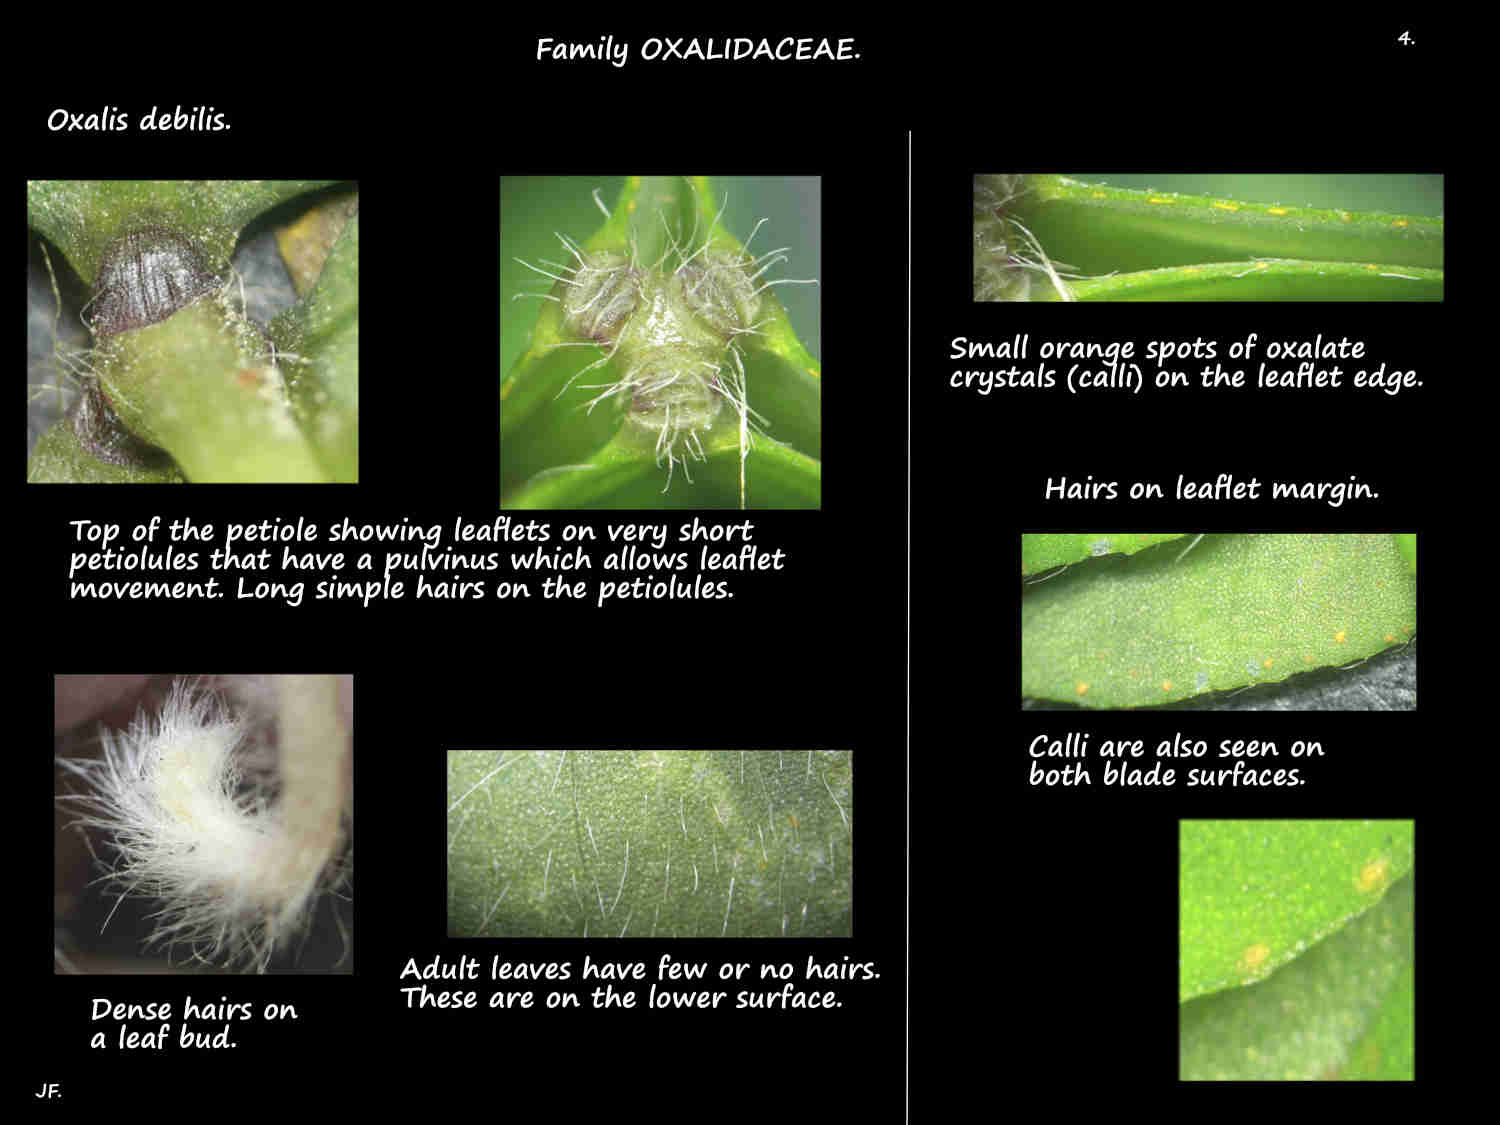 4 Calli & hairs on Oxalis debilis leaves